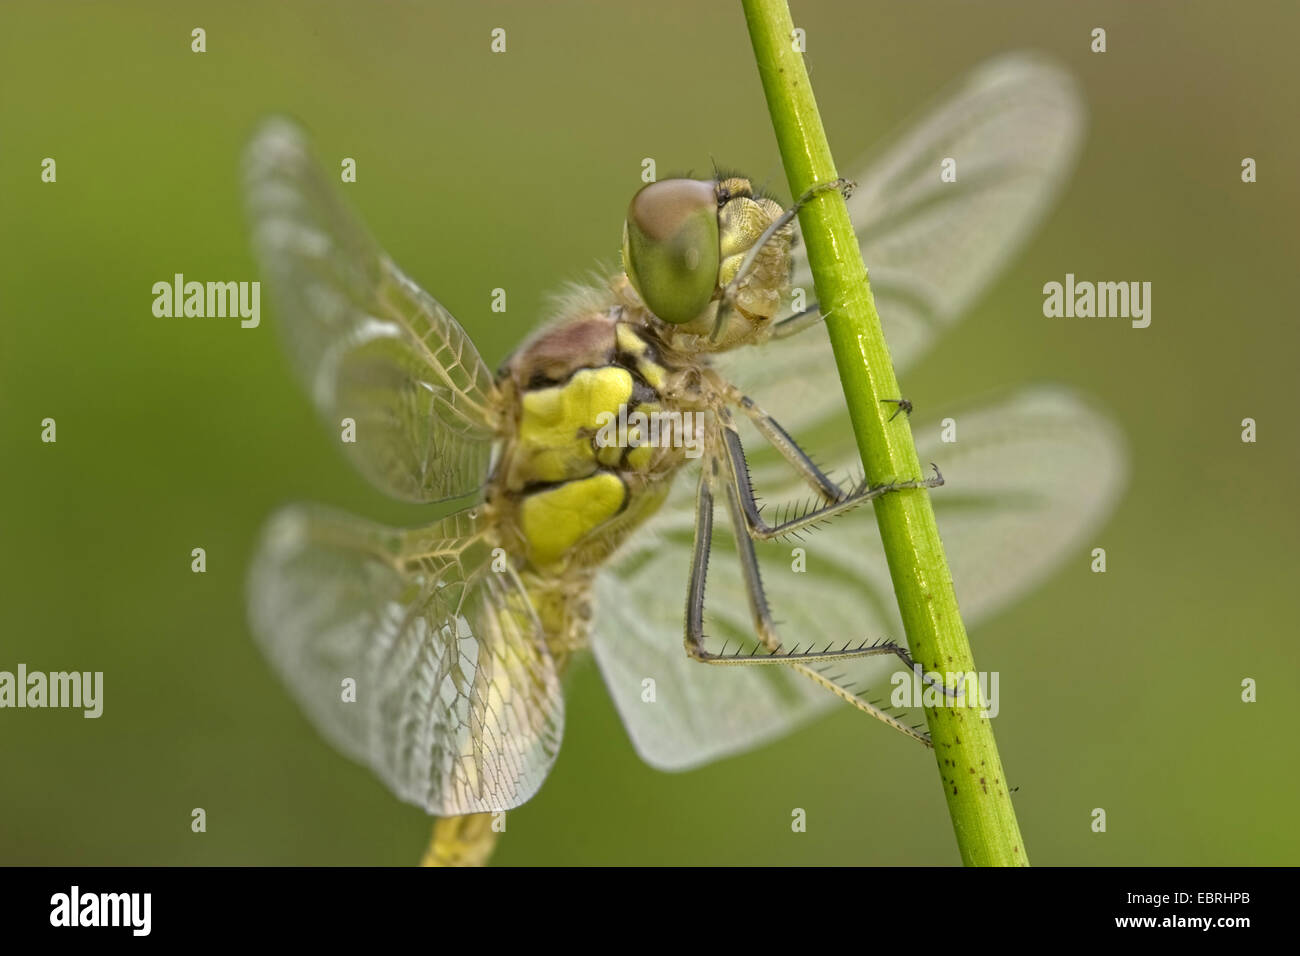 common sympetrum, common darter (Sympetrum striolatum), at a blade of grass, Belgium Stock Photo